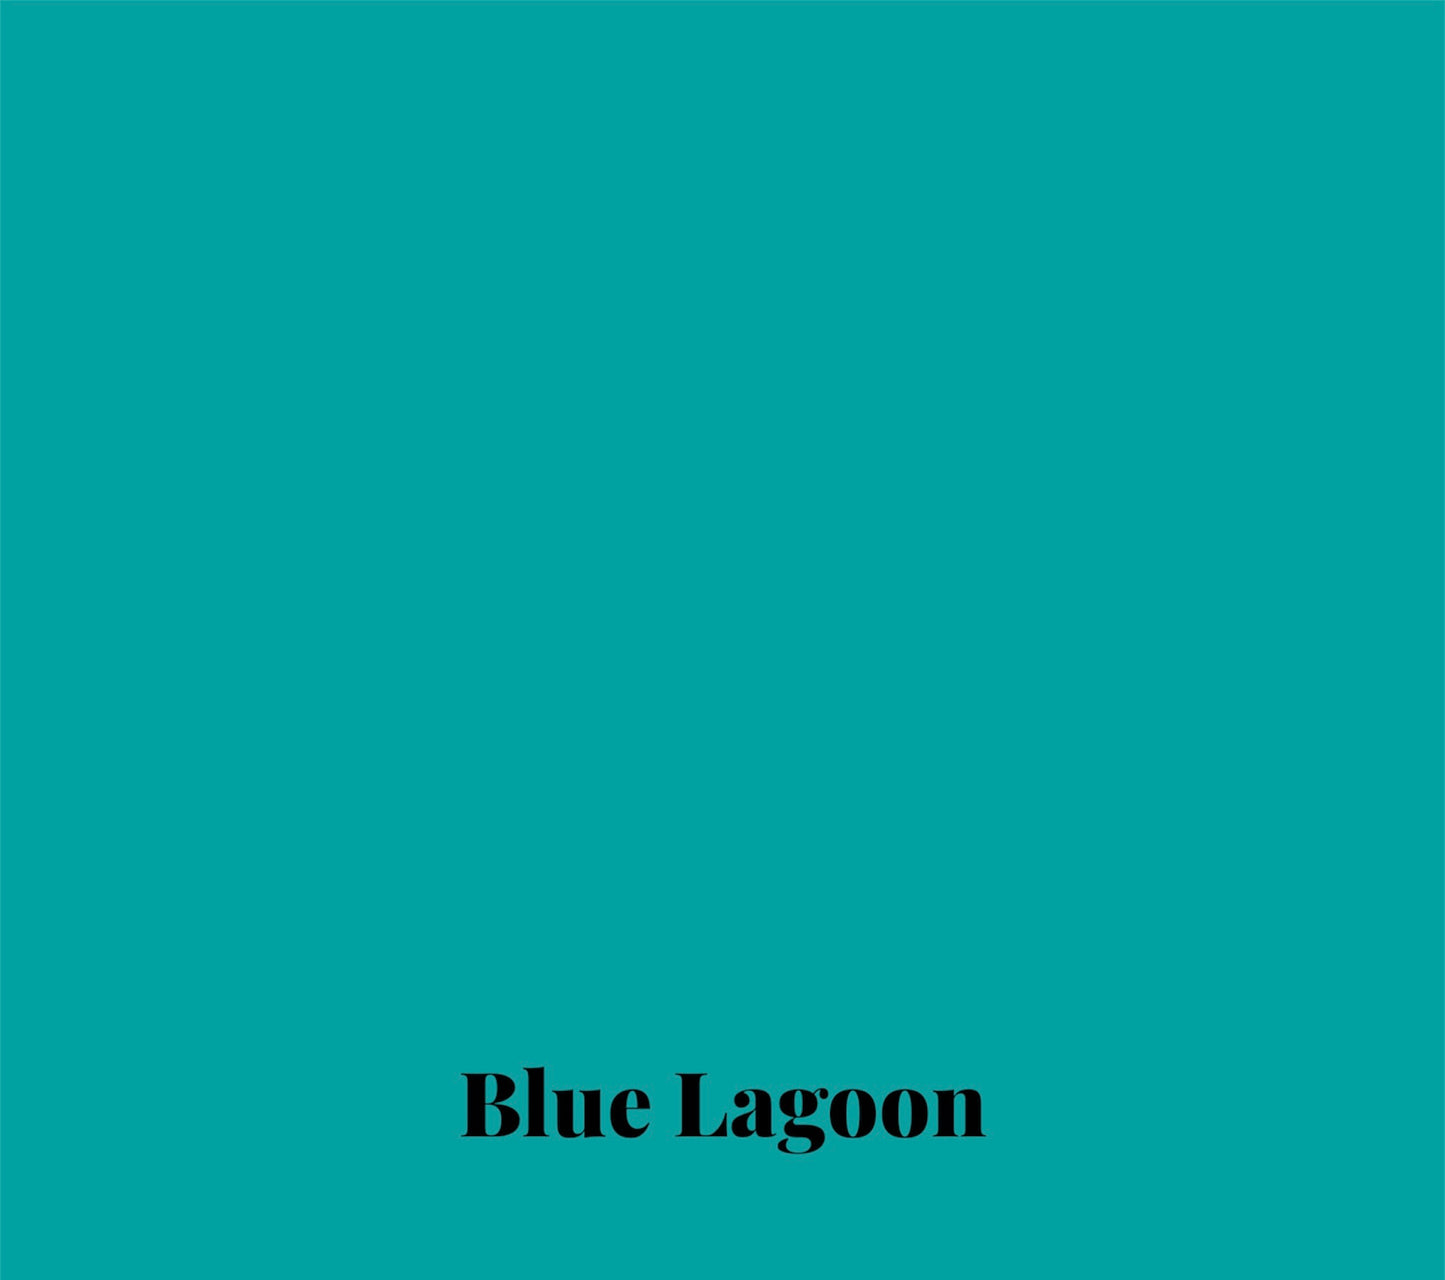 Blue Lagoon Training Lead